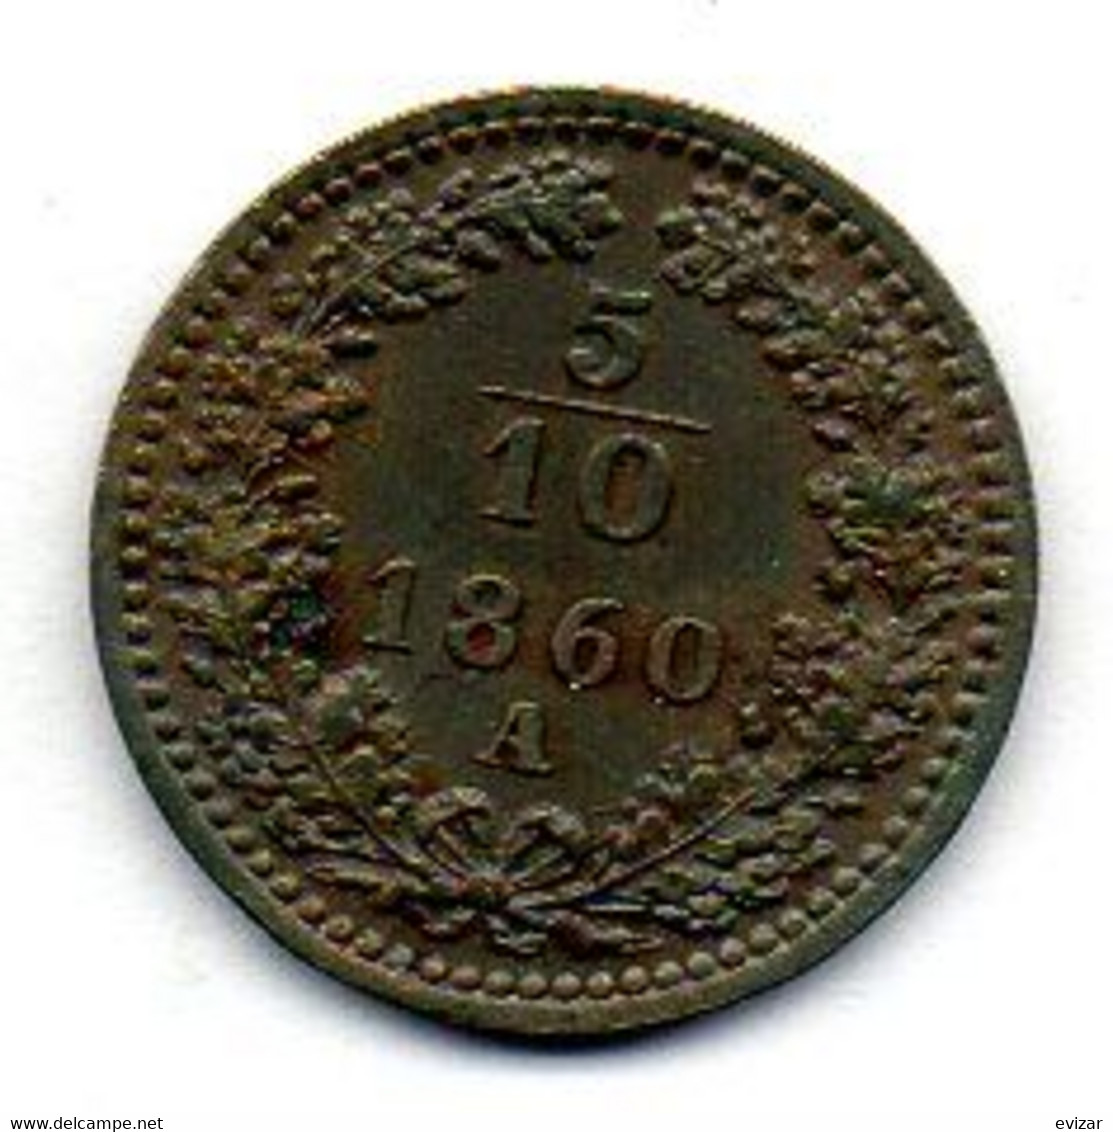 AUSTRIA, 5/10 Kreuzer, Copper, Year 1860-A, KM #2182 - Autriche